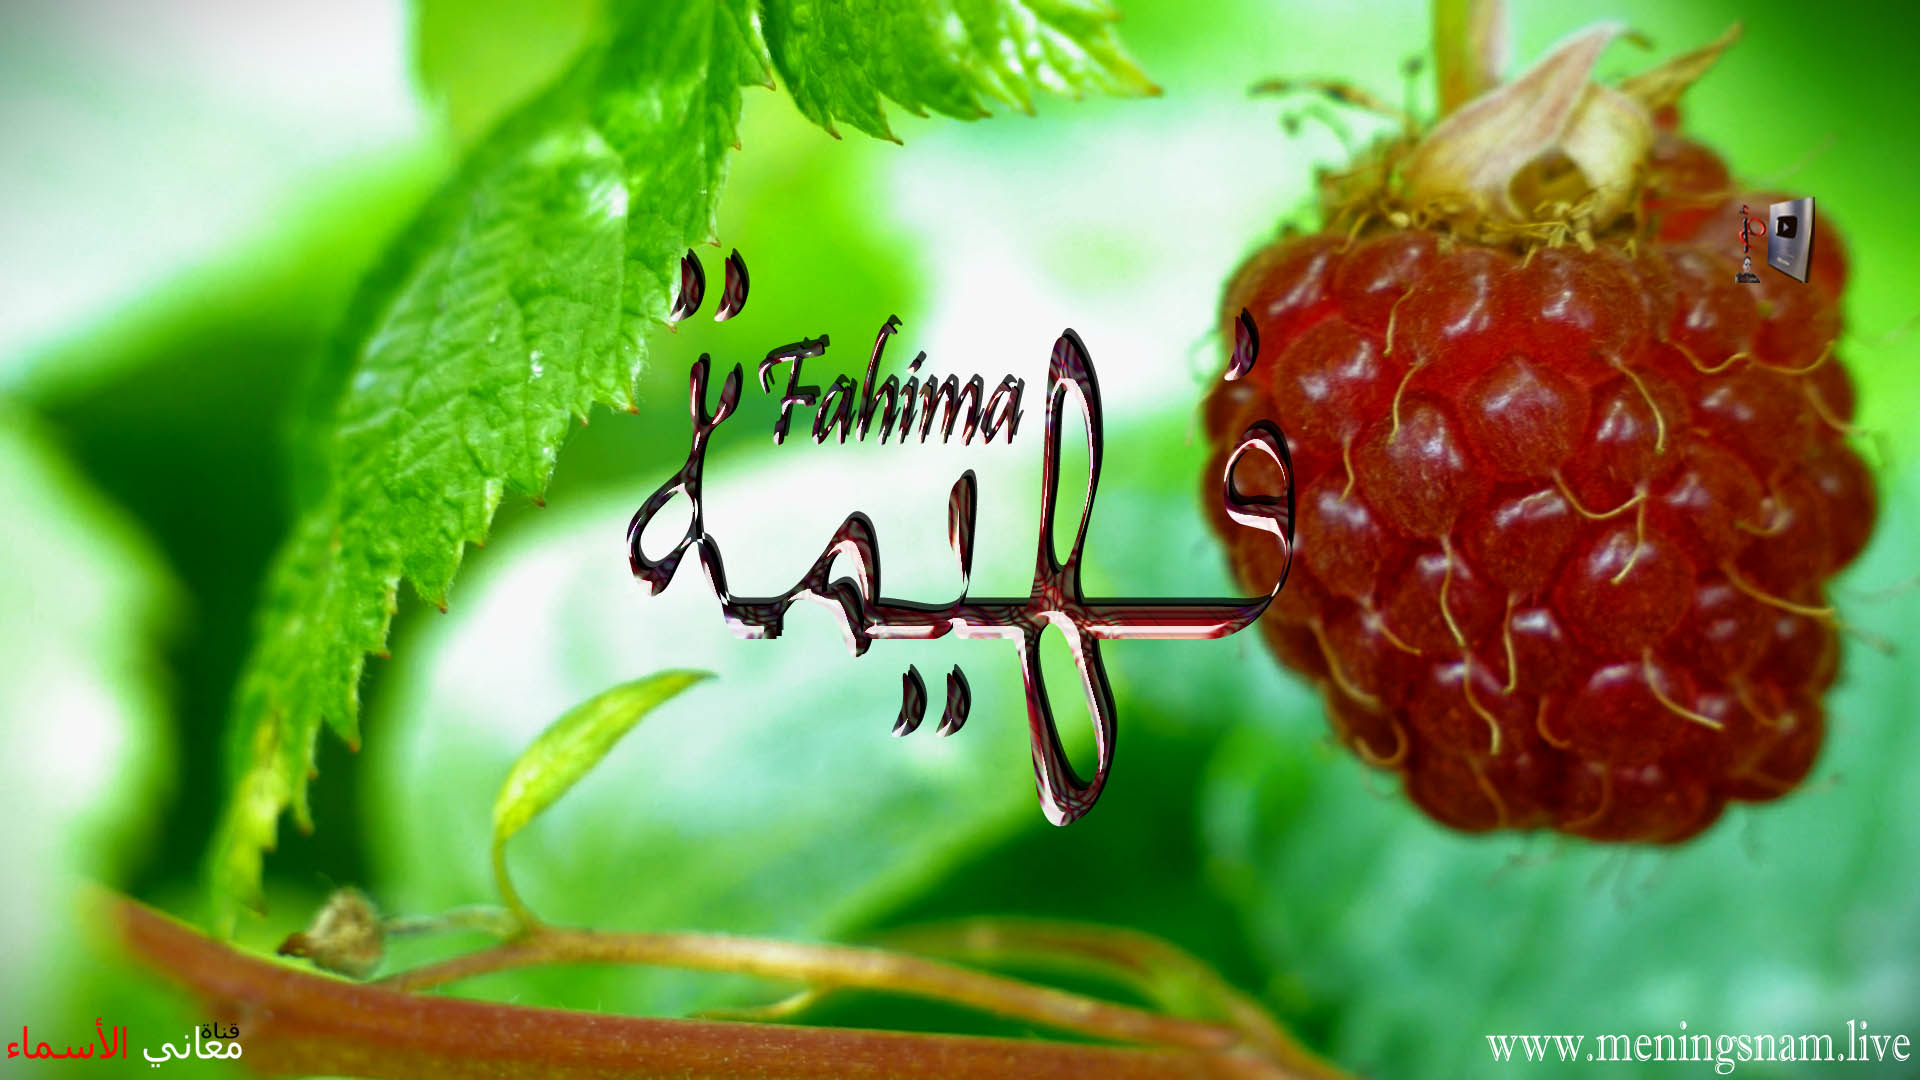 معنى اسم, فهيمة, وصفات, حاملة, هذا الاسم, Fahima,